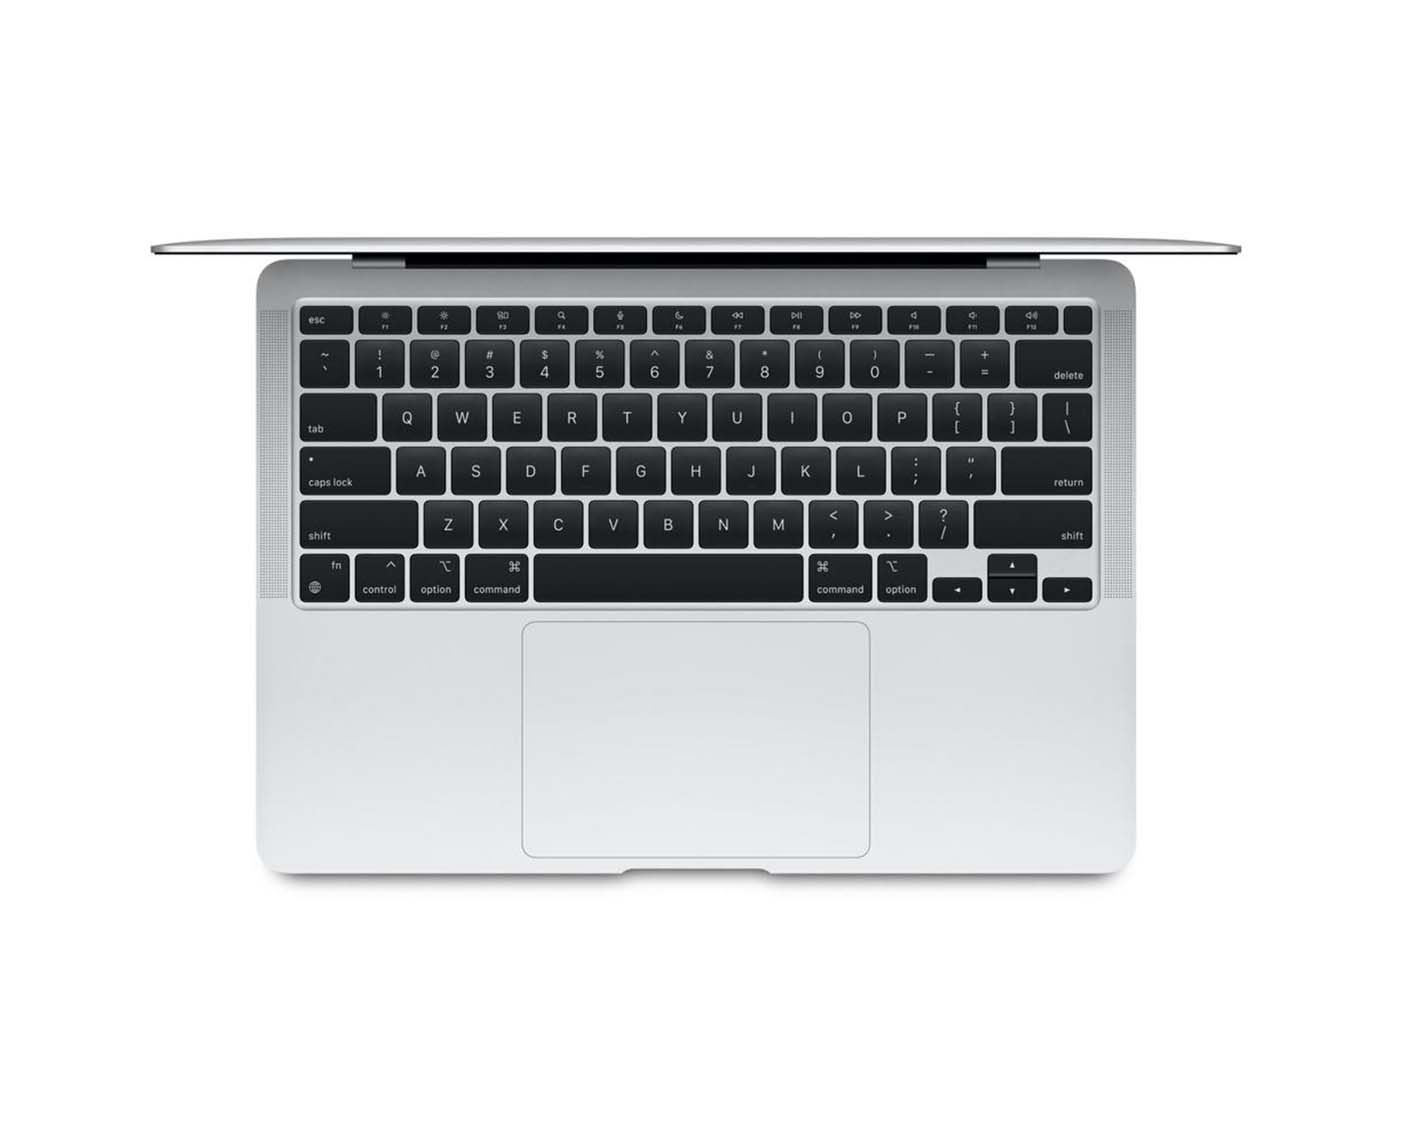 Macbook Air Retina - Current - M1 - 8GB - Silver